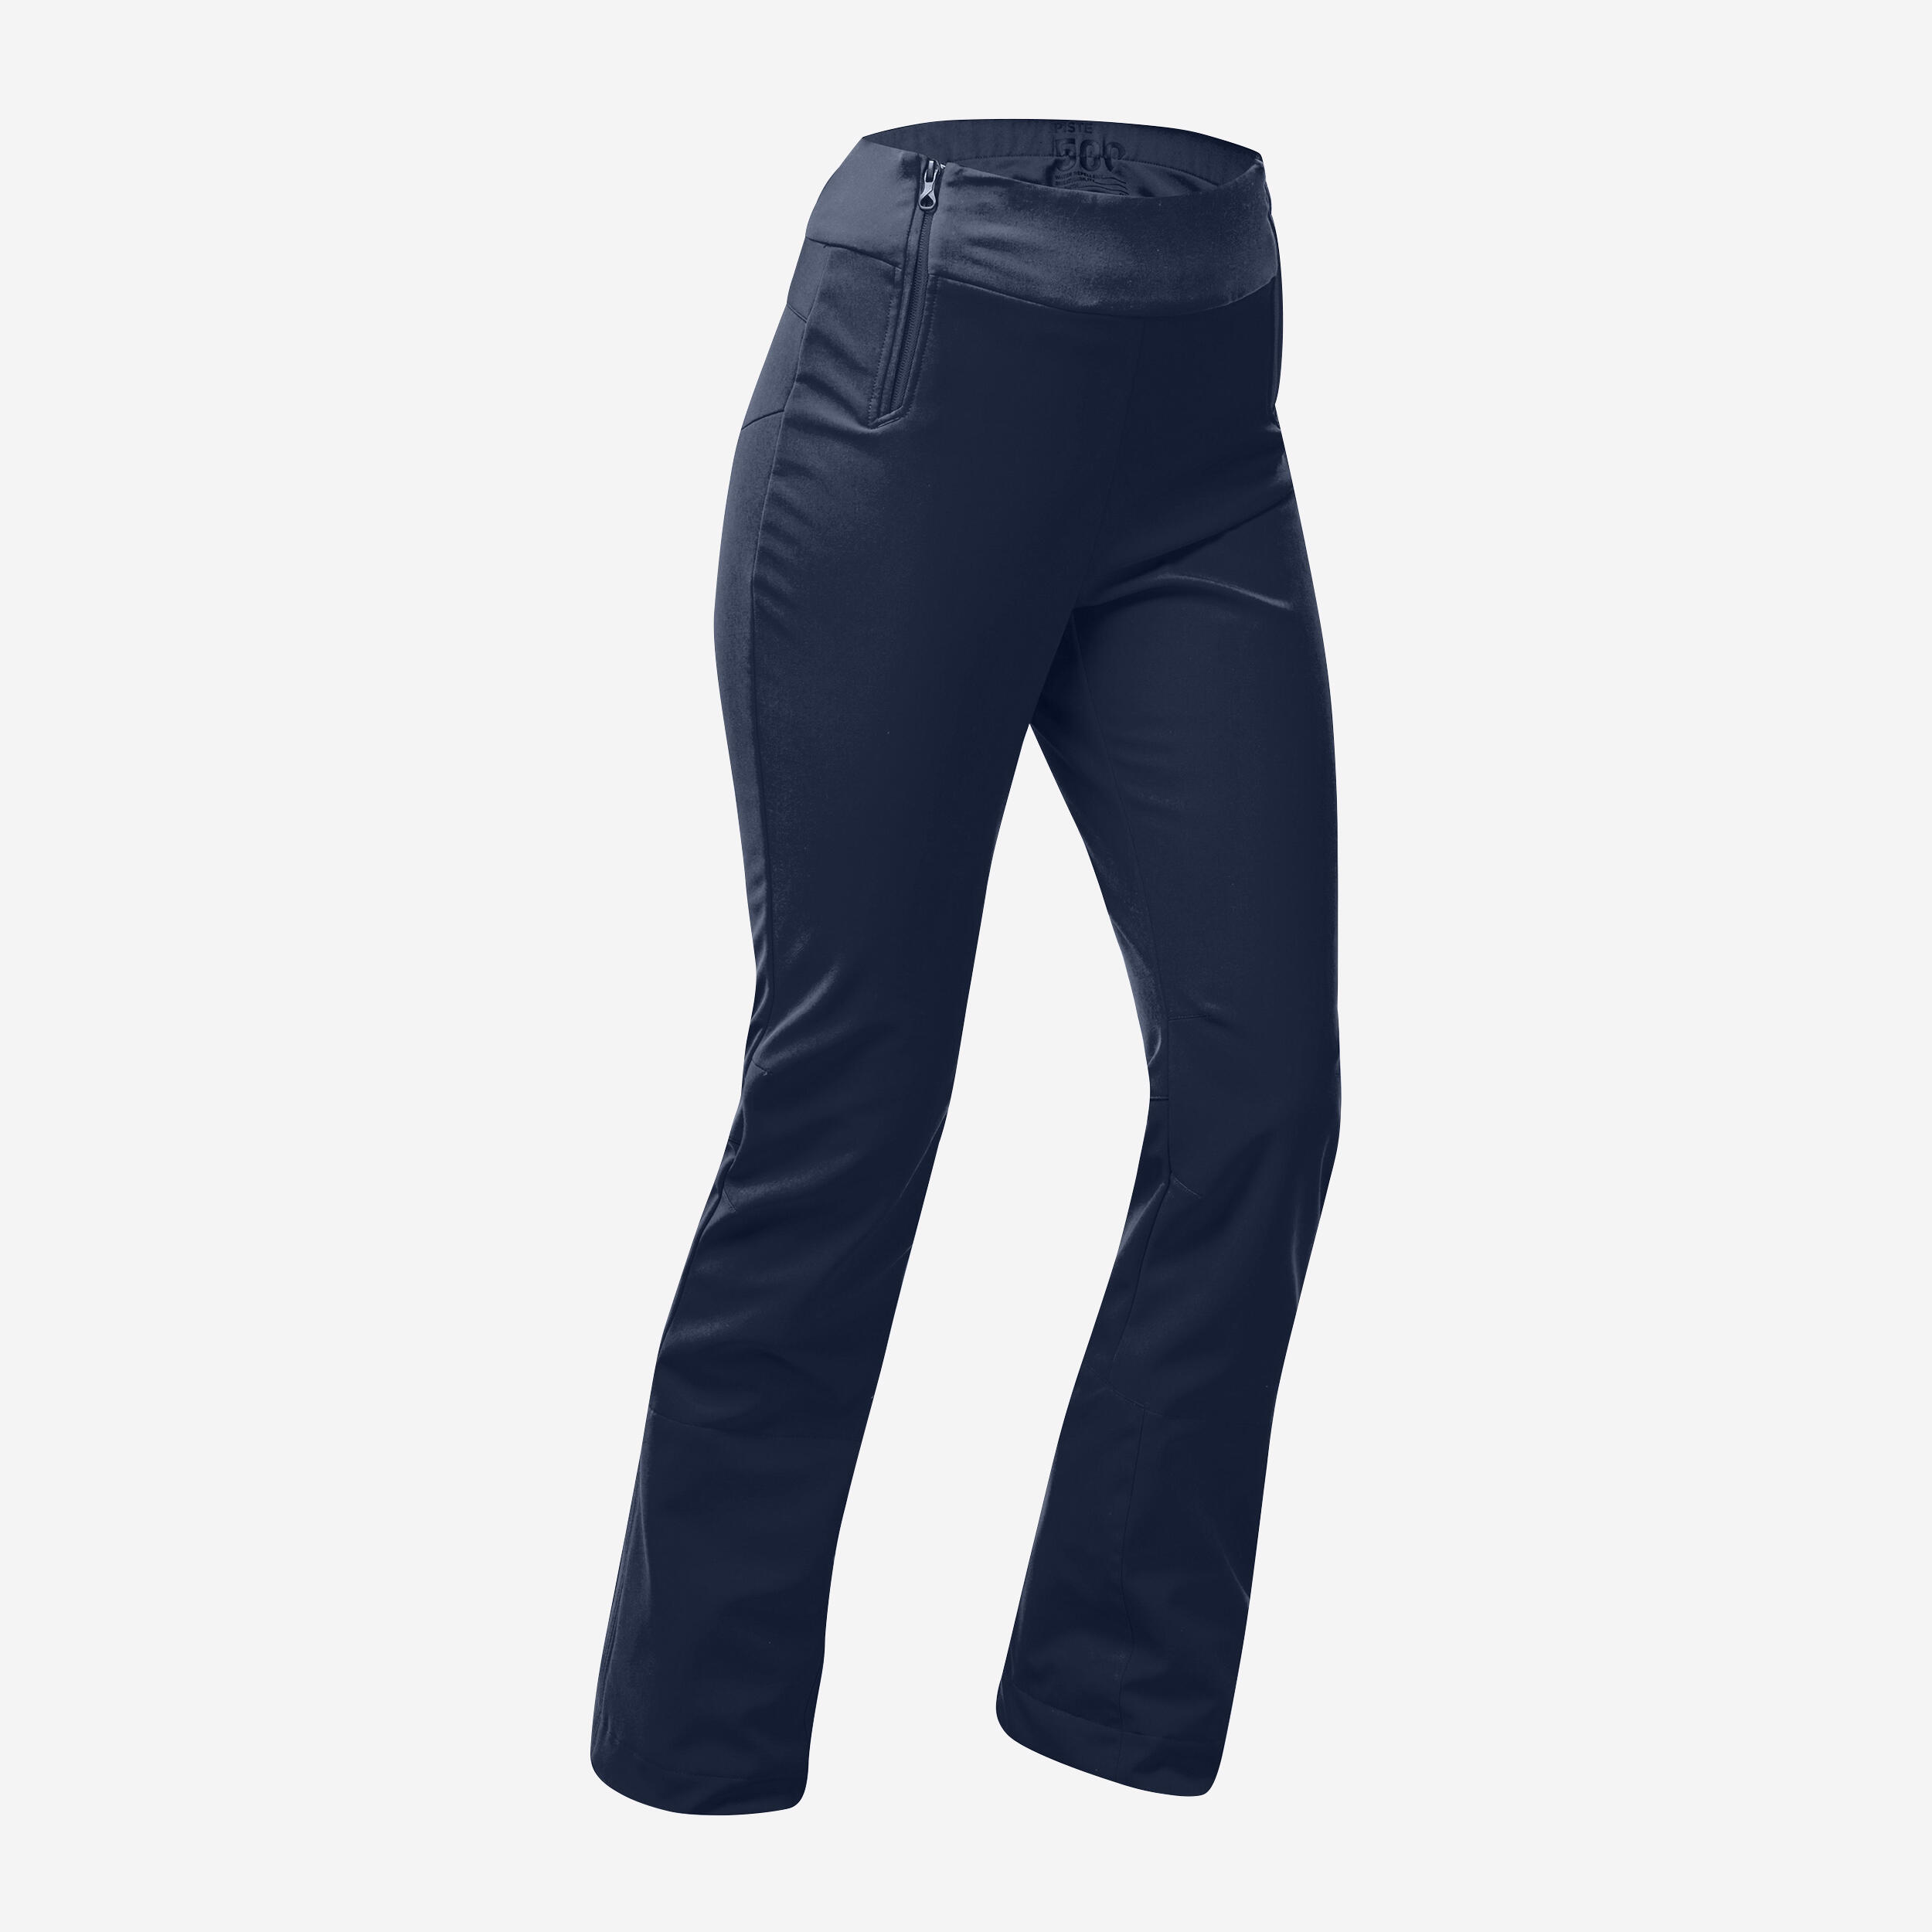 WEDZE Women's Slim Fit Trousers 500 - Navy Blue